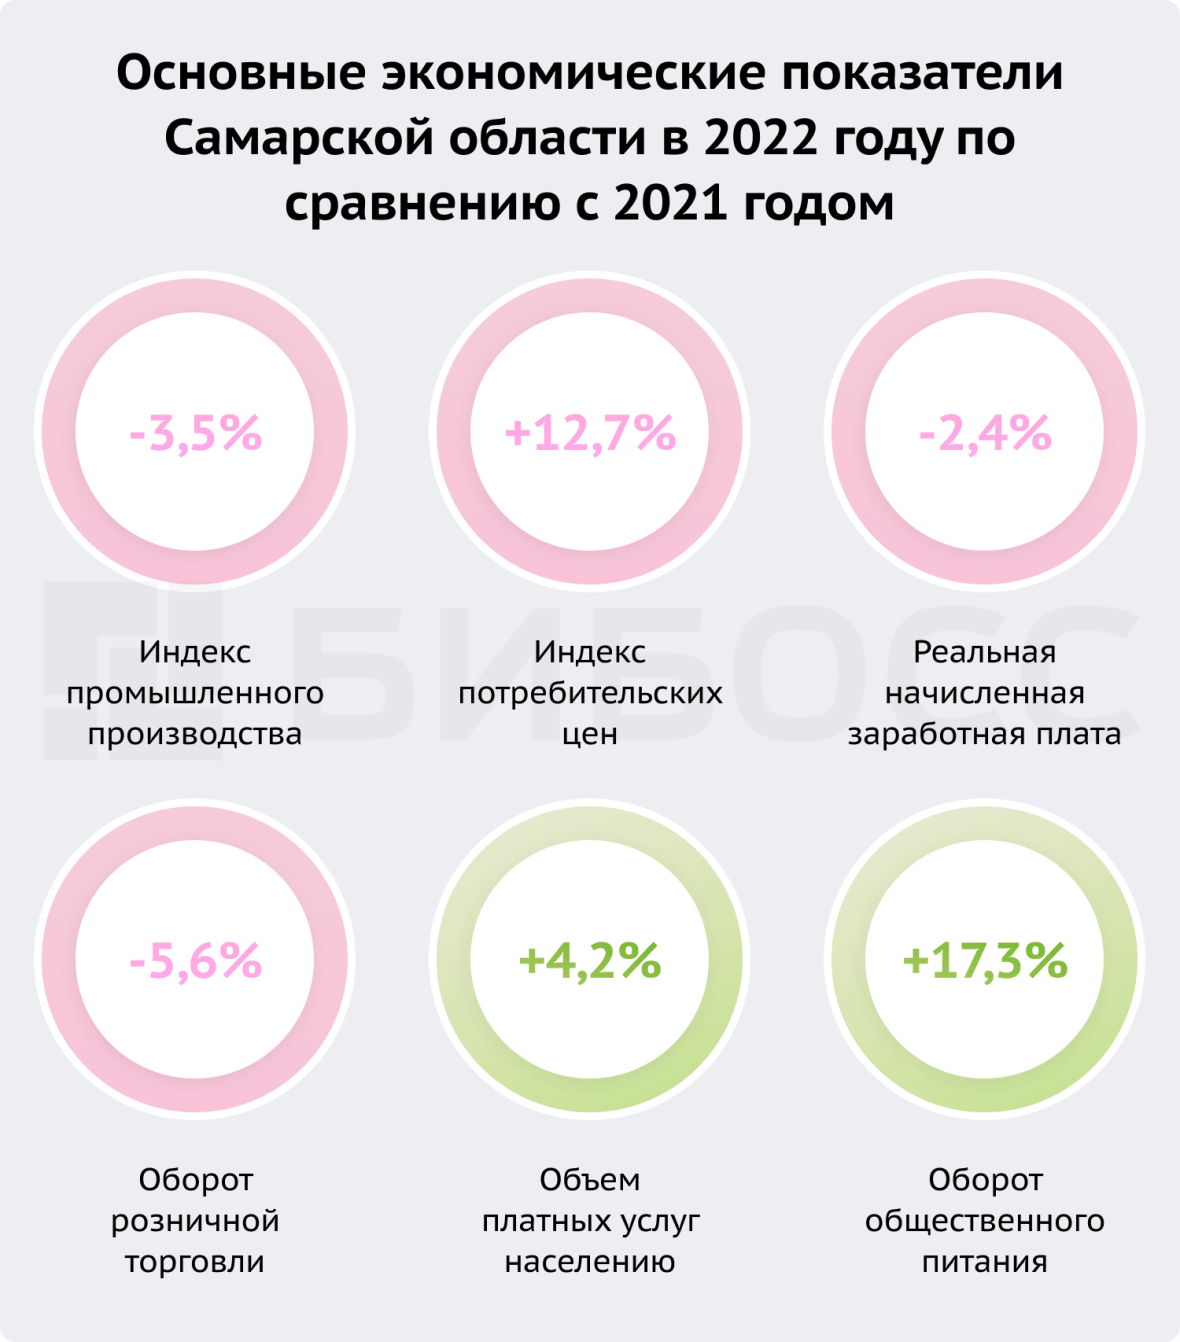 Основные экономические показатели Самарской области в 2022 году